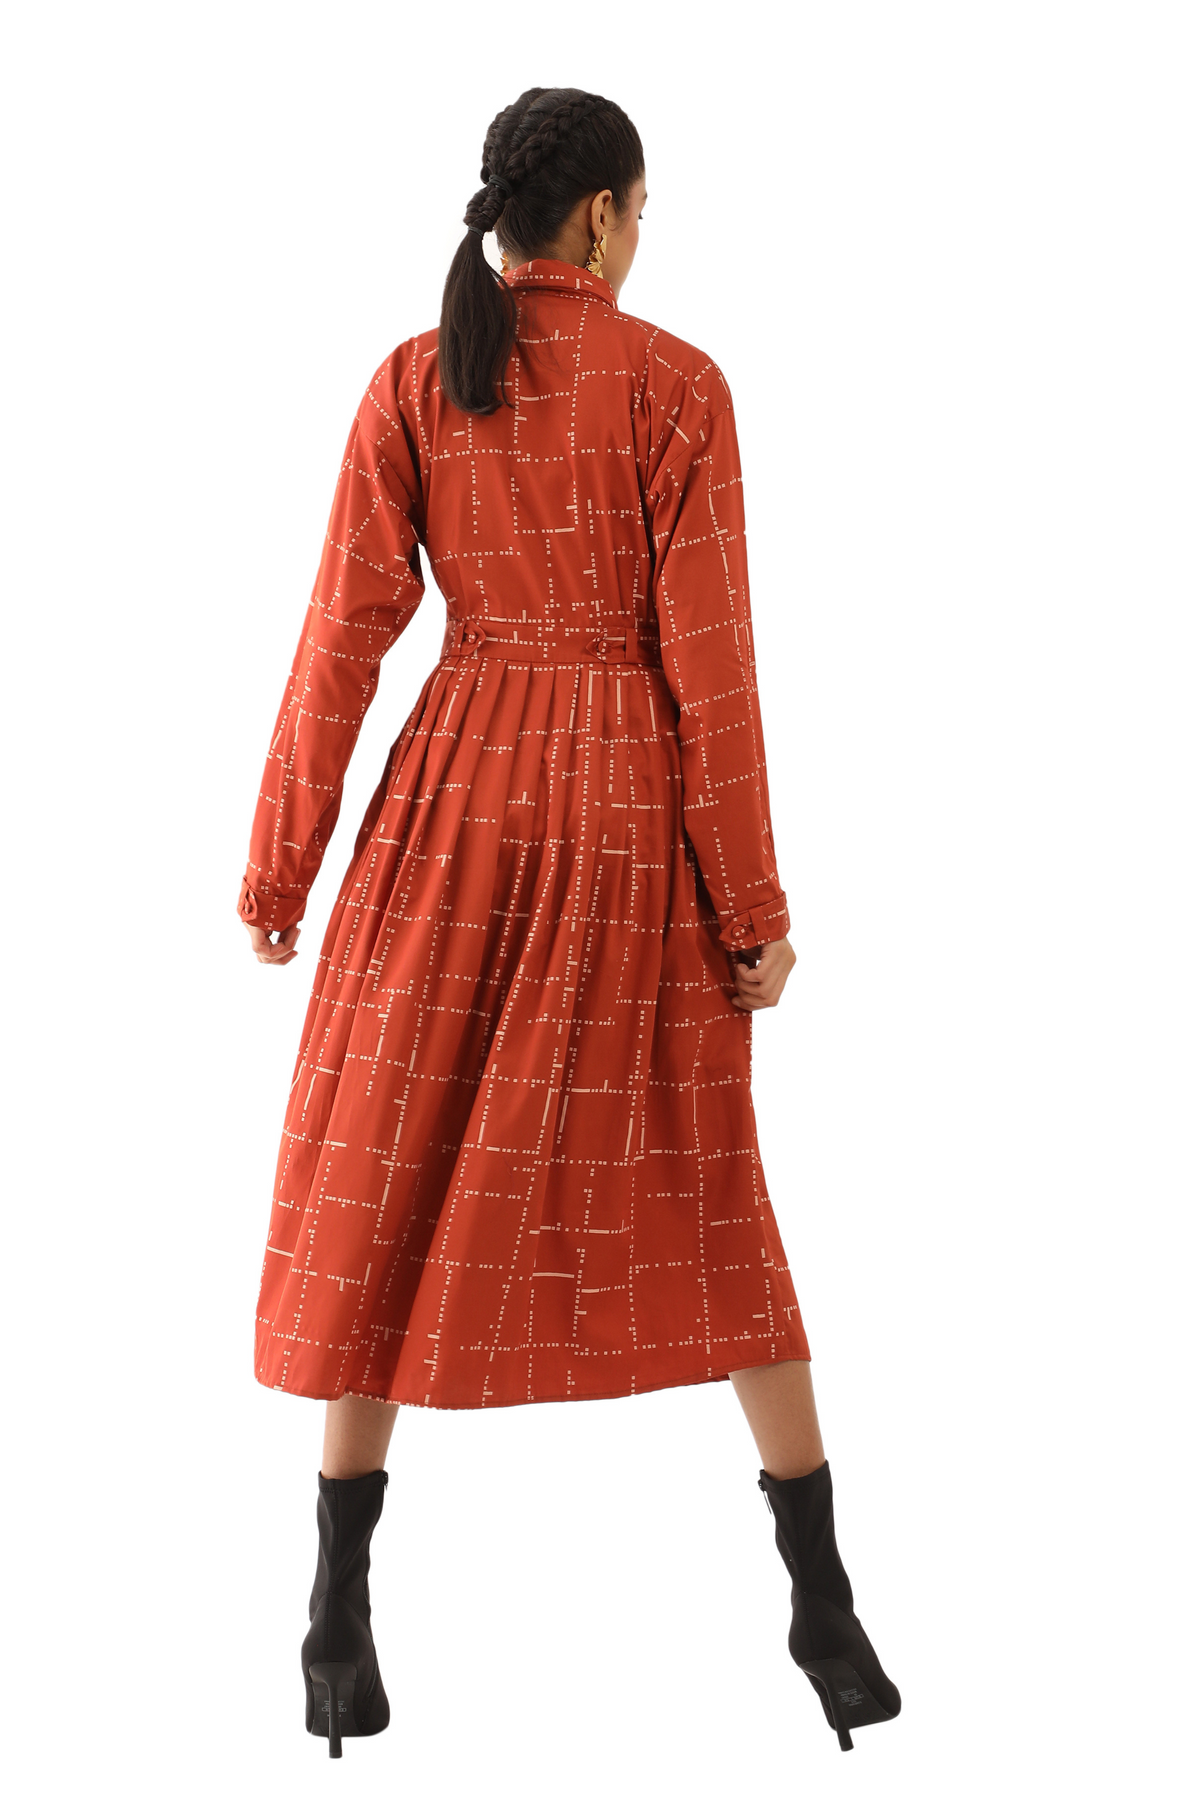 Quinn - Rust Dress